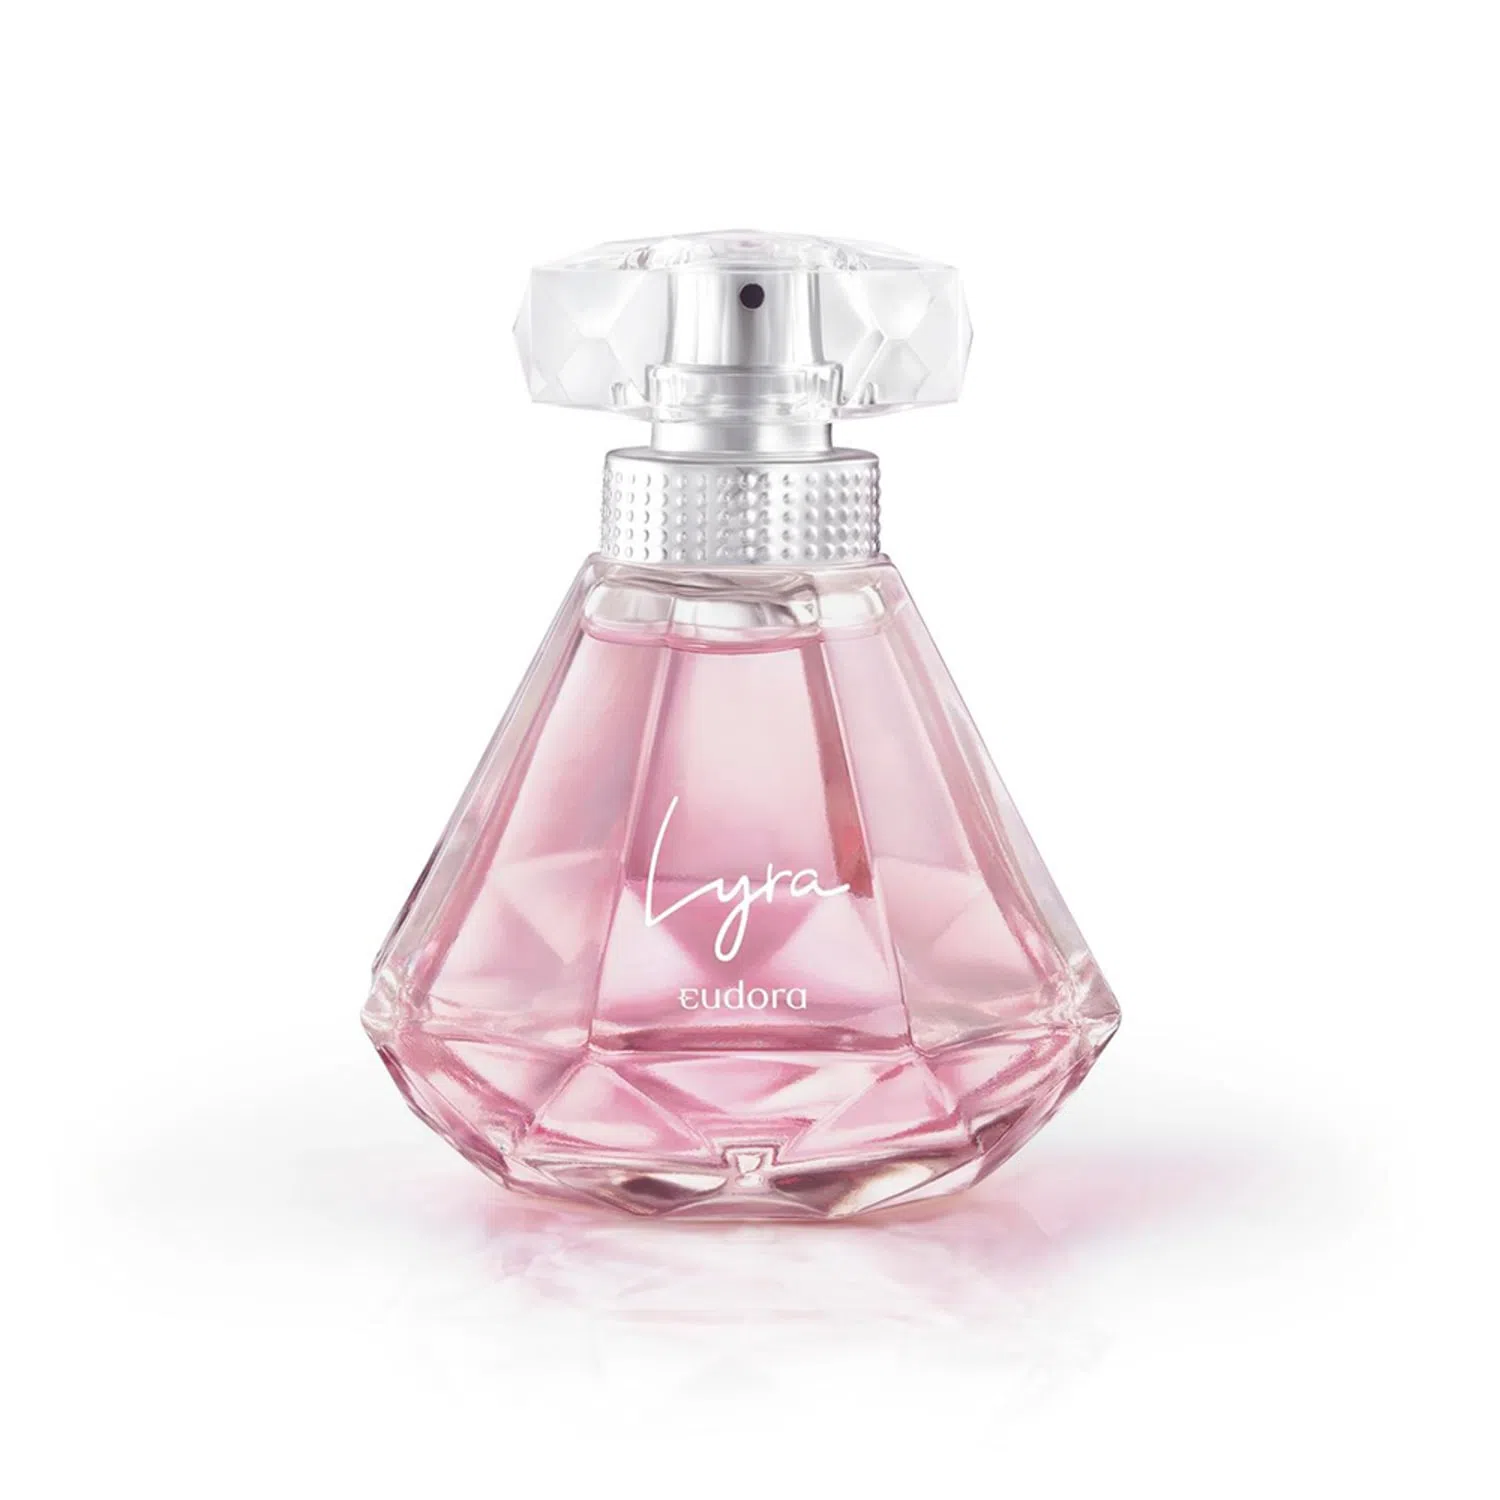 vidro de perfume de mulher transparente com líquido rosa